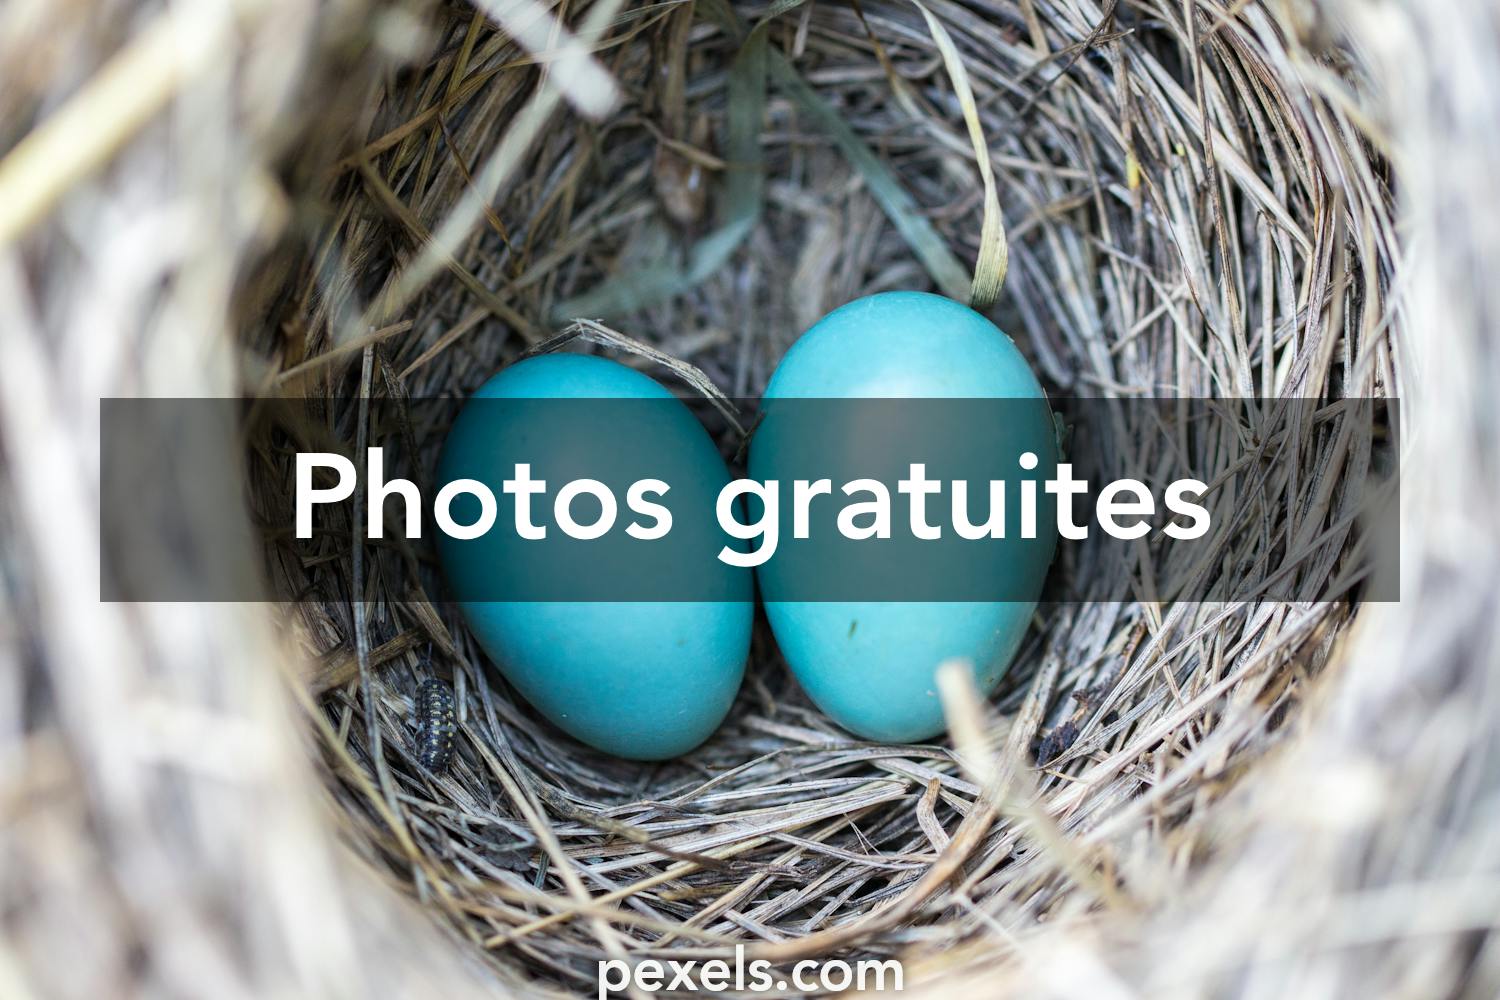 Oiseau nid : 466 963 images, photos de stock, objets 3D et images